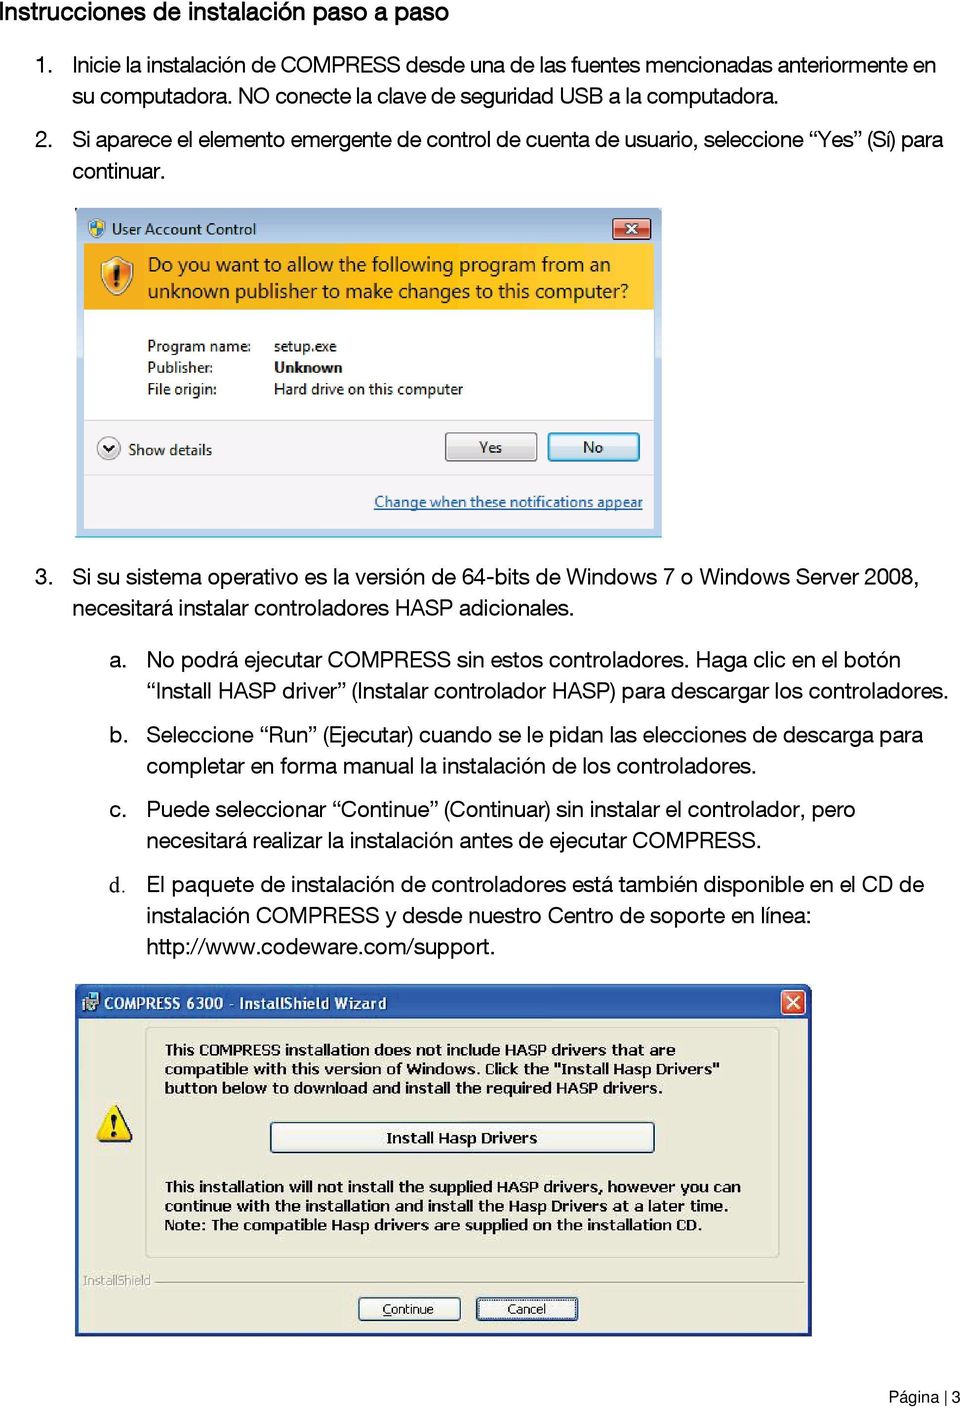 Si su sistema operativo es la versión de 64-bits de Windows 7 o Windows Server 2008, necesitará instalar controladores HASP adicionales. a. No podrá ejecutar COMPRESS sin estos controladores.